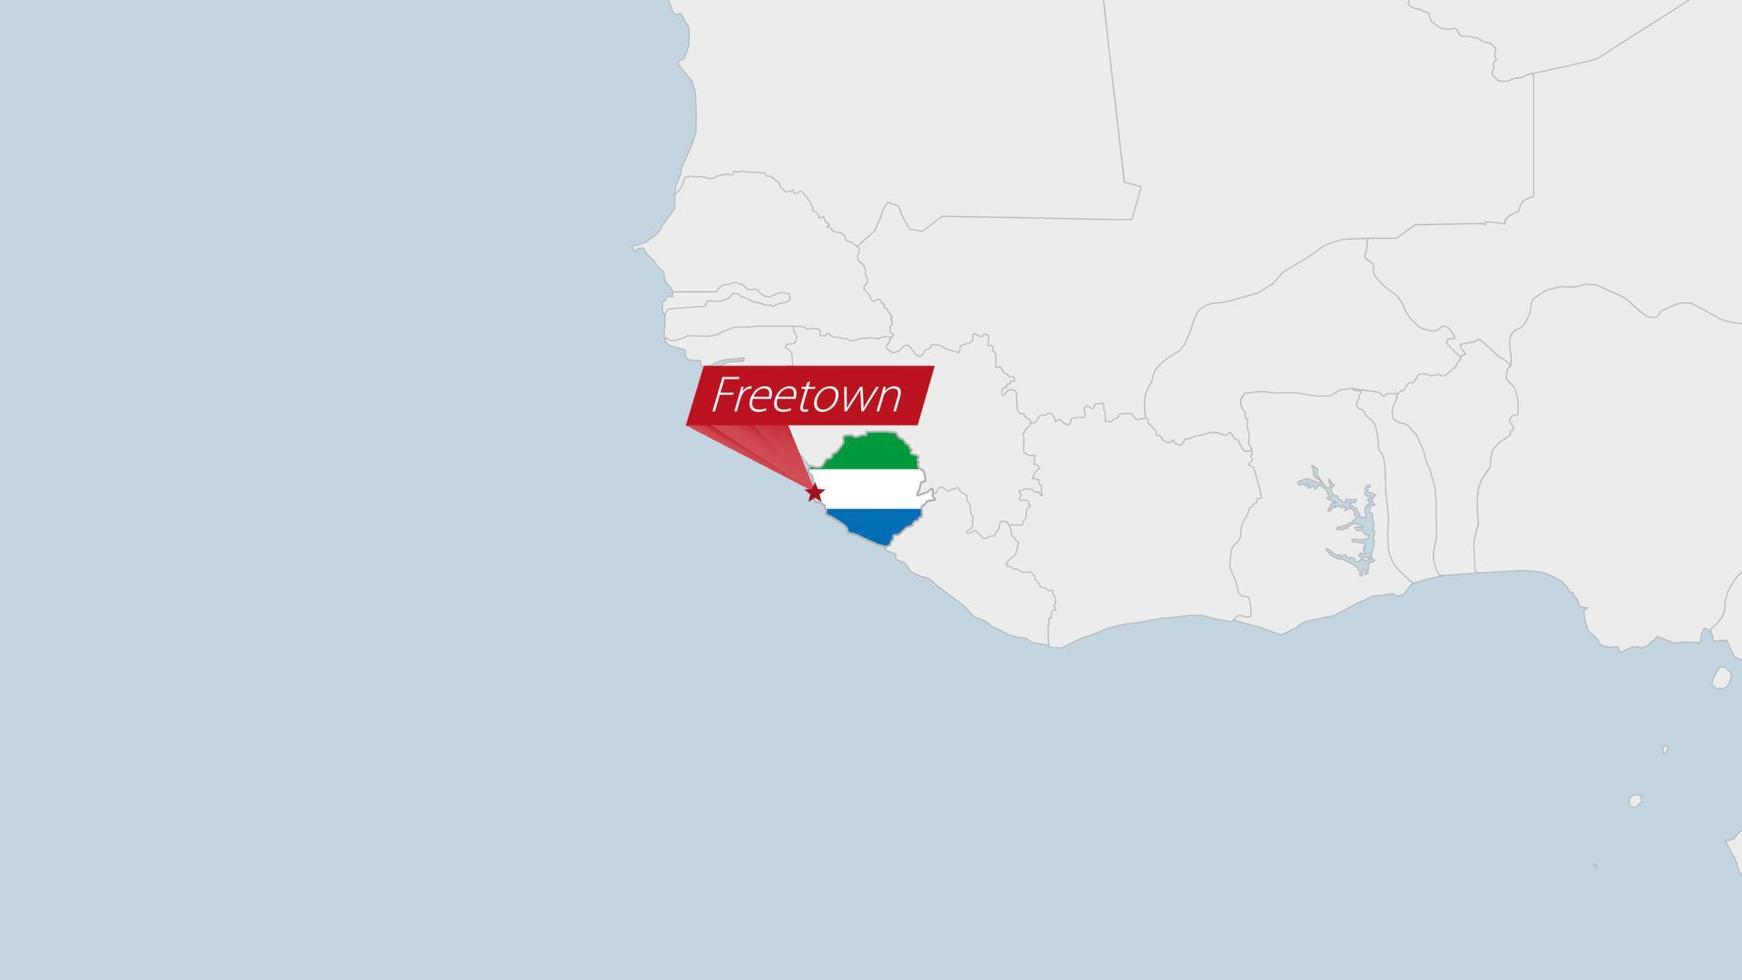 serra leone mapa em destaque dentro serra leone bandeira cores e PIN do país capital freetown. vetor